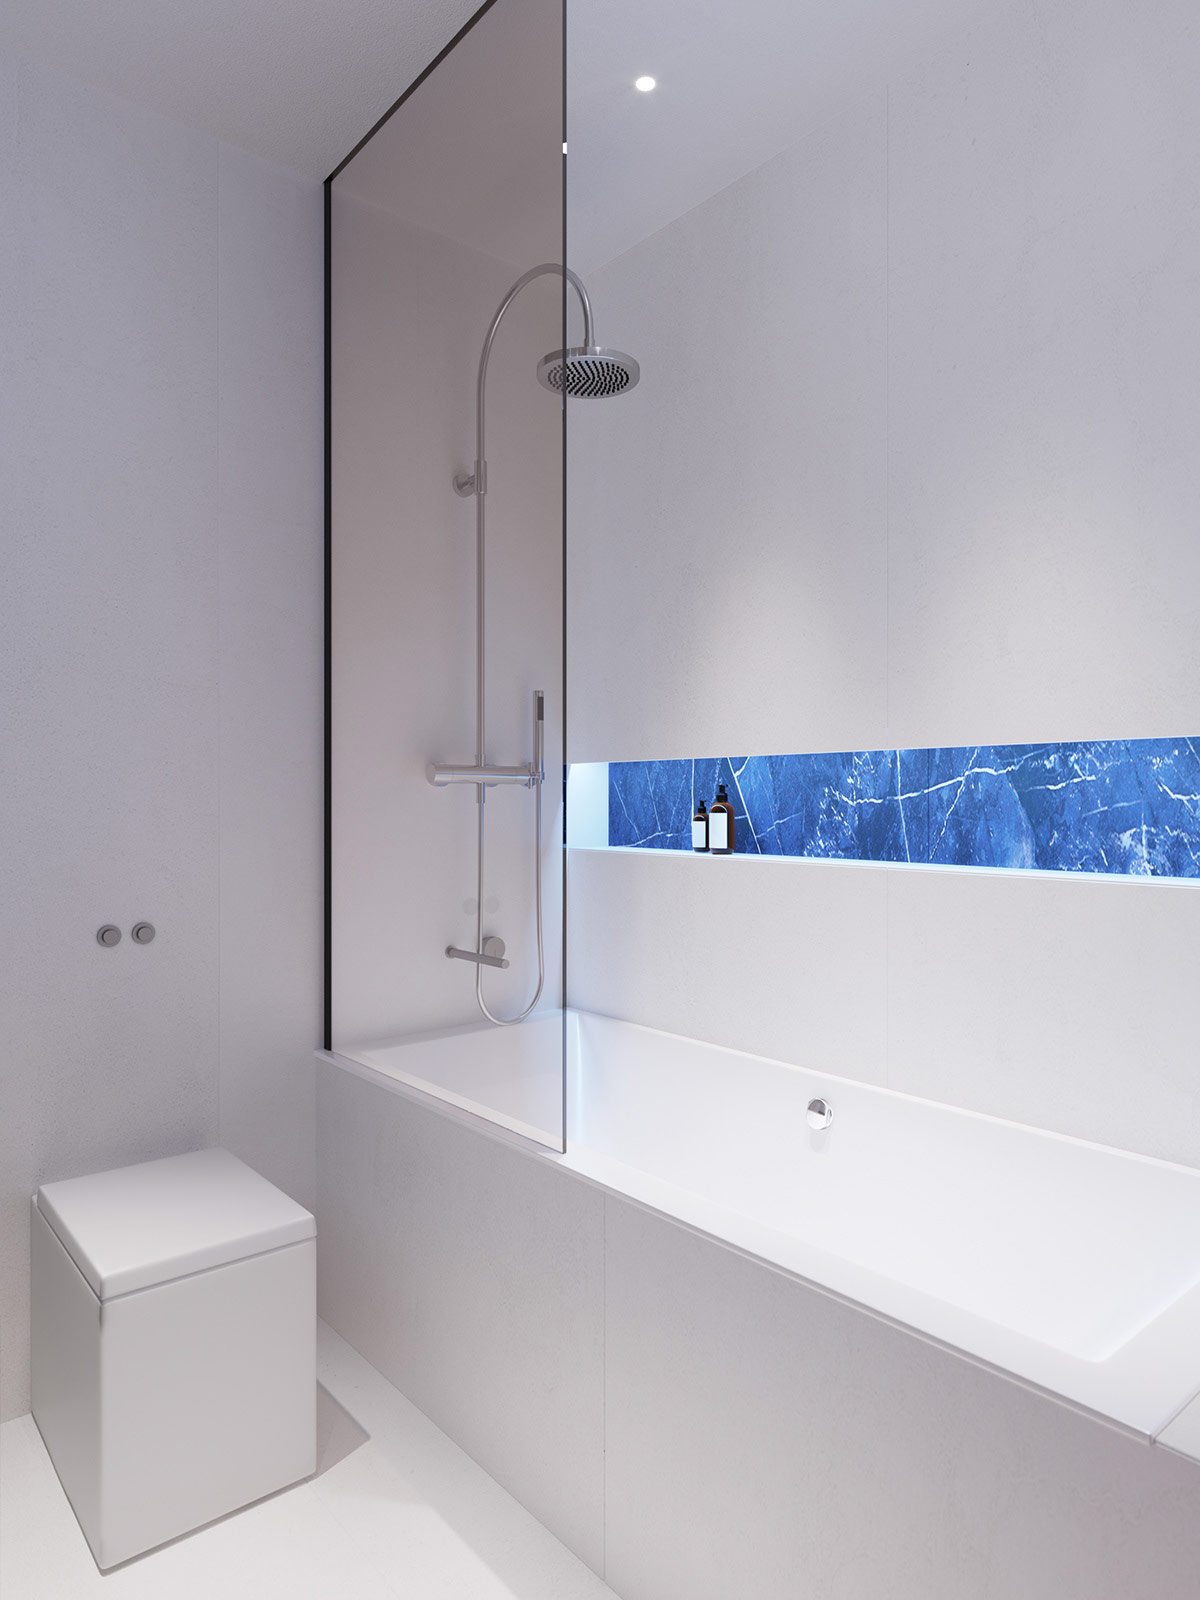 Đá cẩm thạch xanh ốp mặt sau của kệ âm tường phía trên bồn tắm tạo sự kiên kết với khu vực bồn rửa bên ngoài.